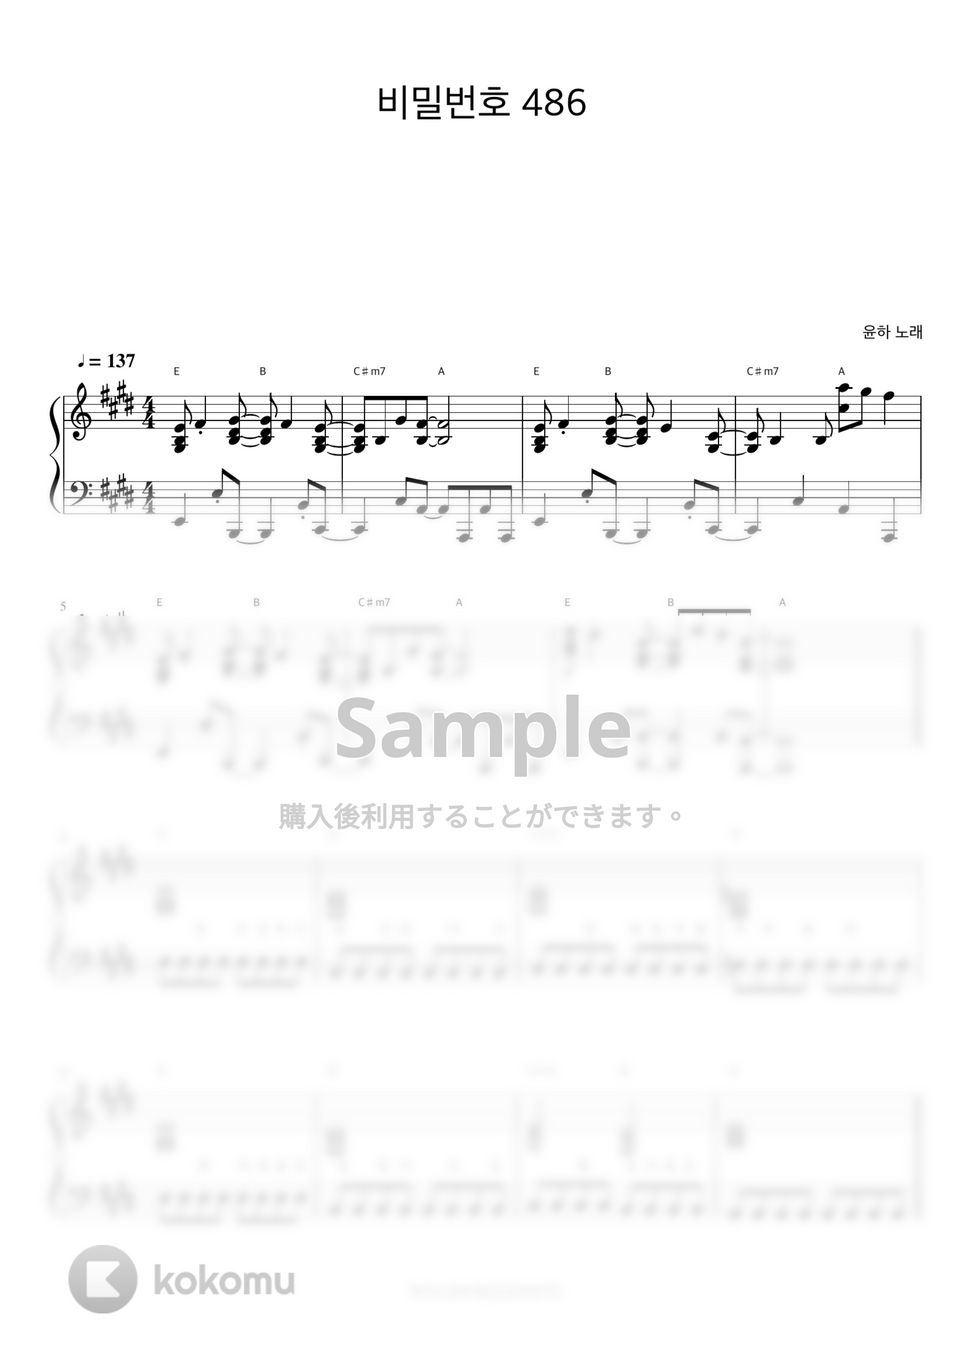 ユンナ - Password 486 (伴奏楽譜) by 피아노정류장